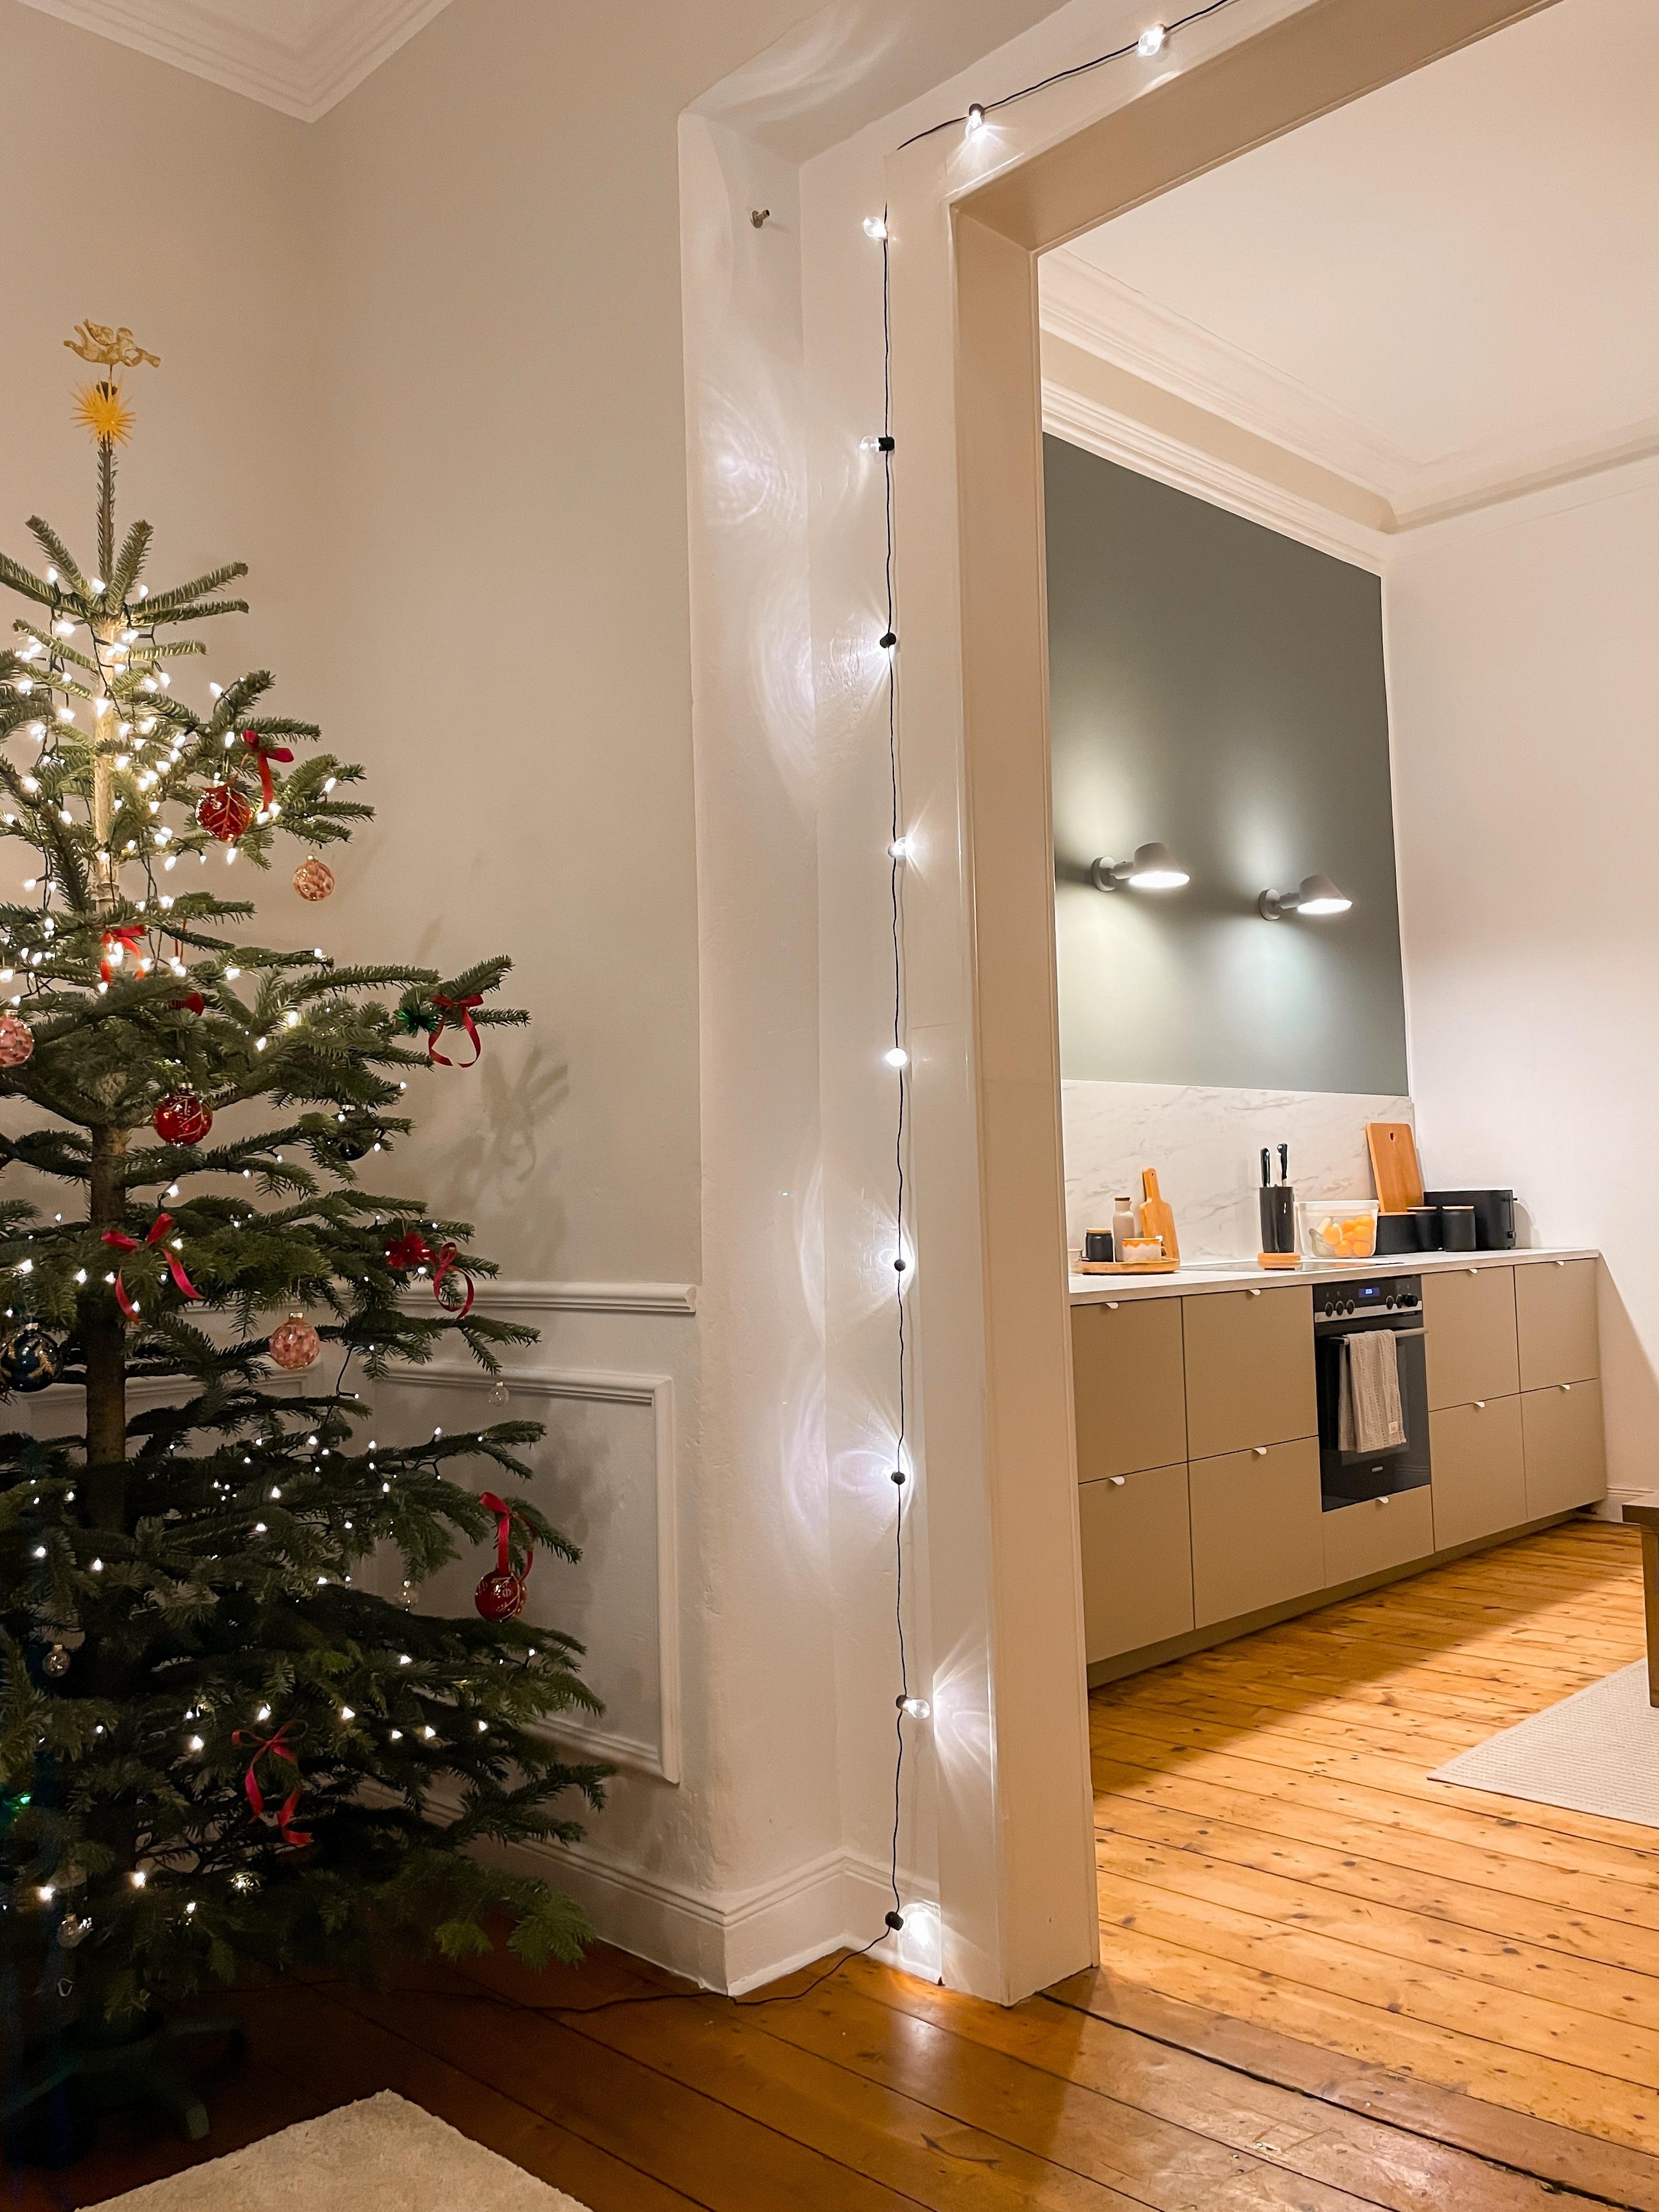 Der Blick in unsere „fertige“ Küche aus dem Wohnzimmer 🥹 
#wohnzimmer #weihnachtsbaum #küche #offeneküche #umzug #altbau